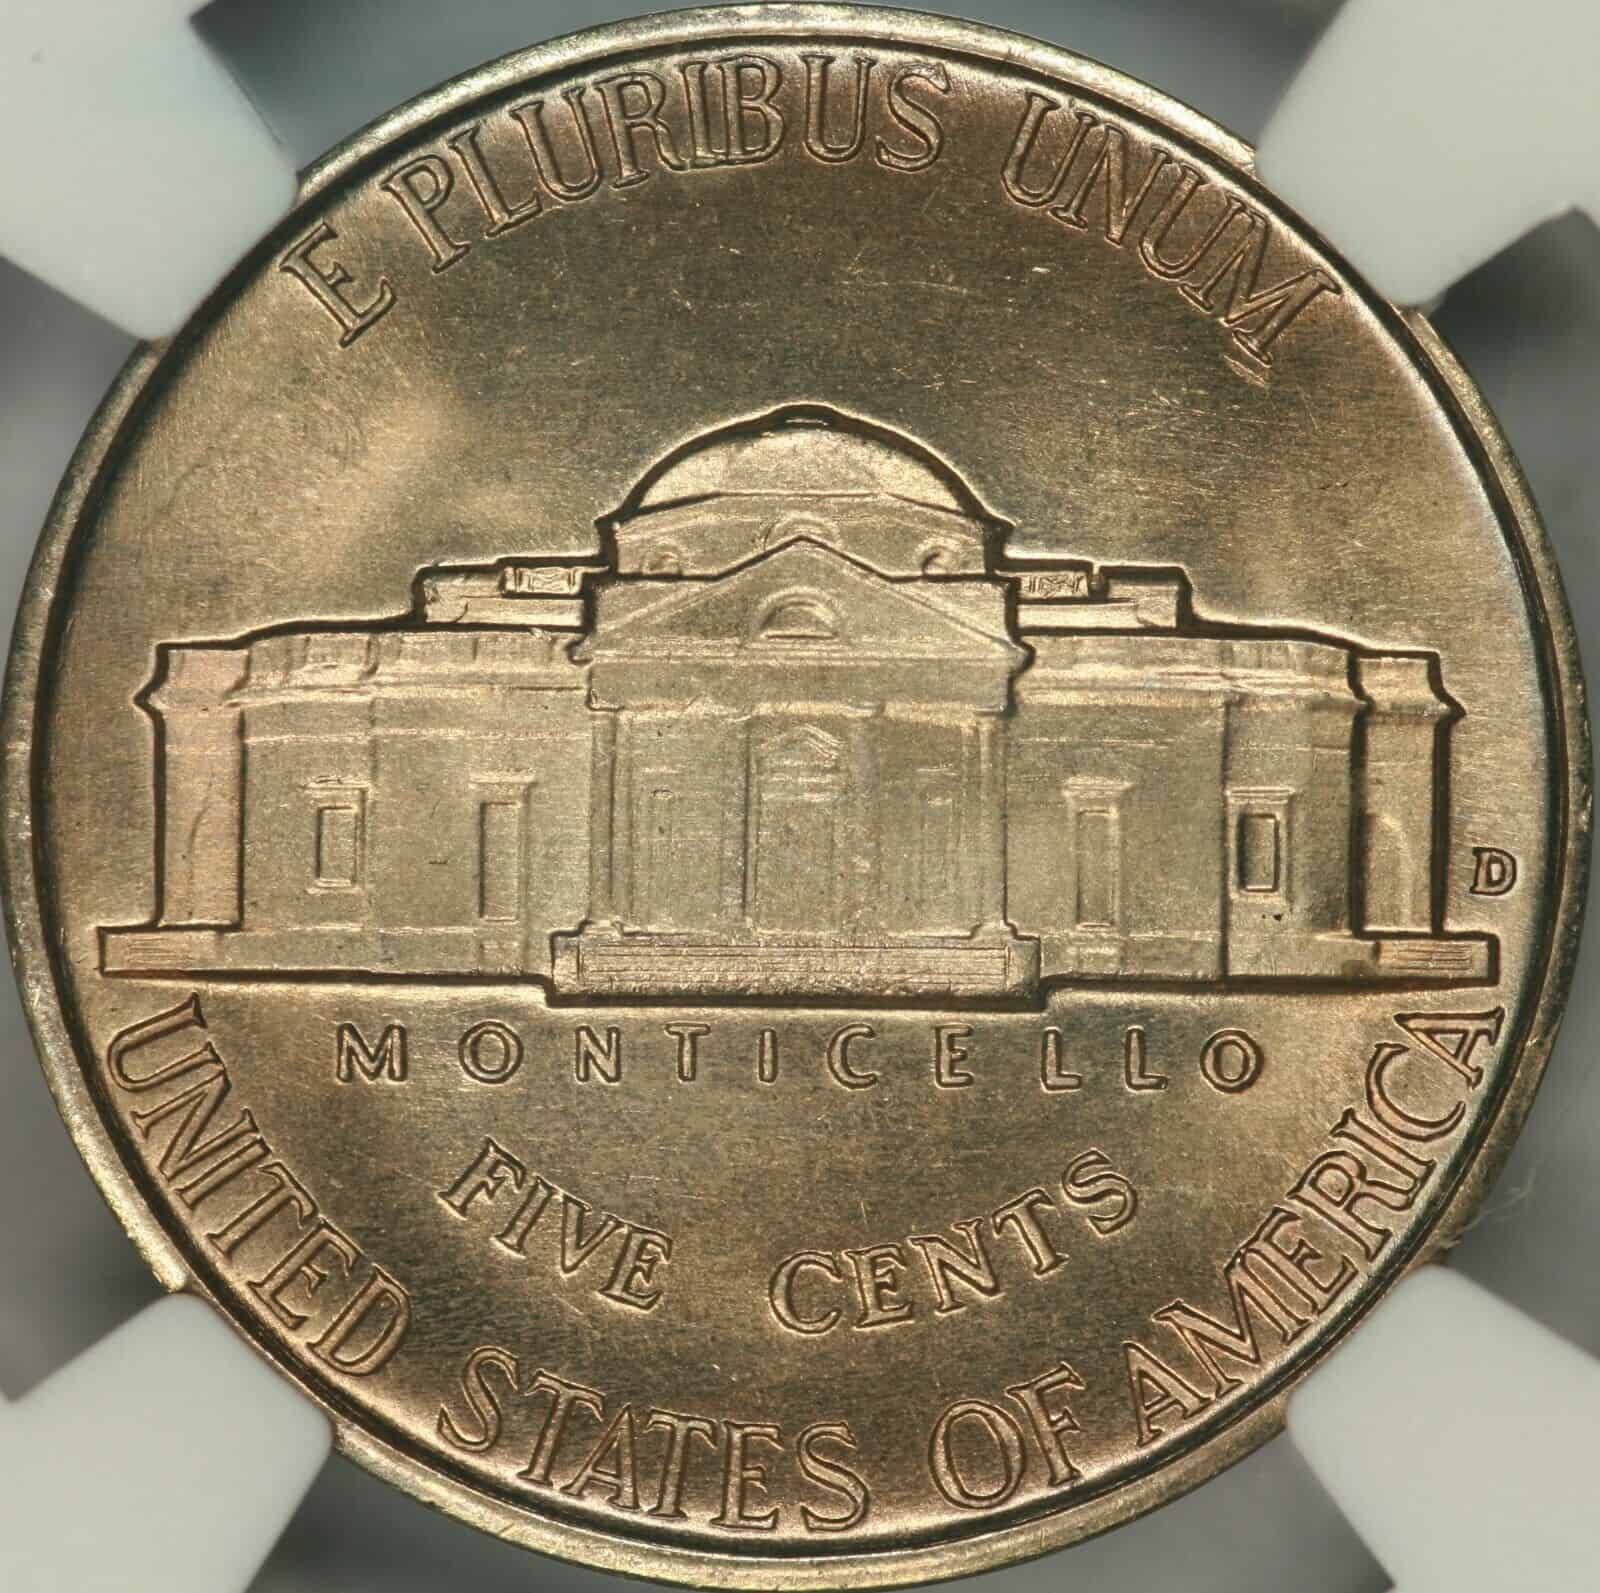 1940 Denver Nickel